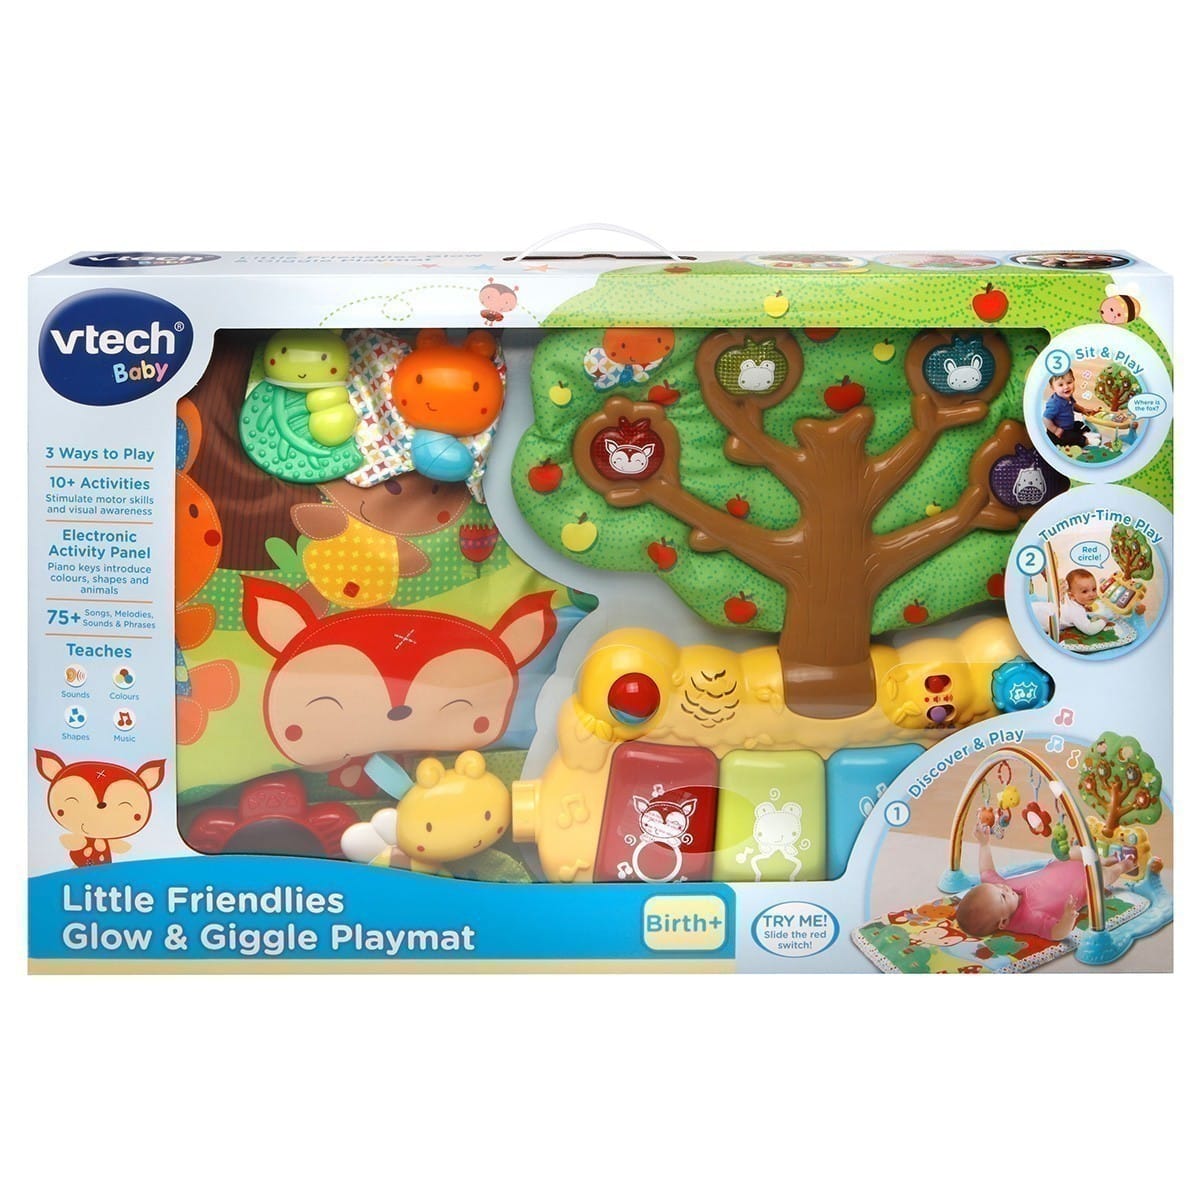 Vtech Baby - Little Friendlies Glow & Giggle Playmat